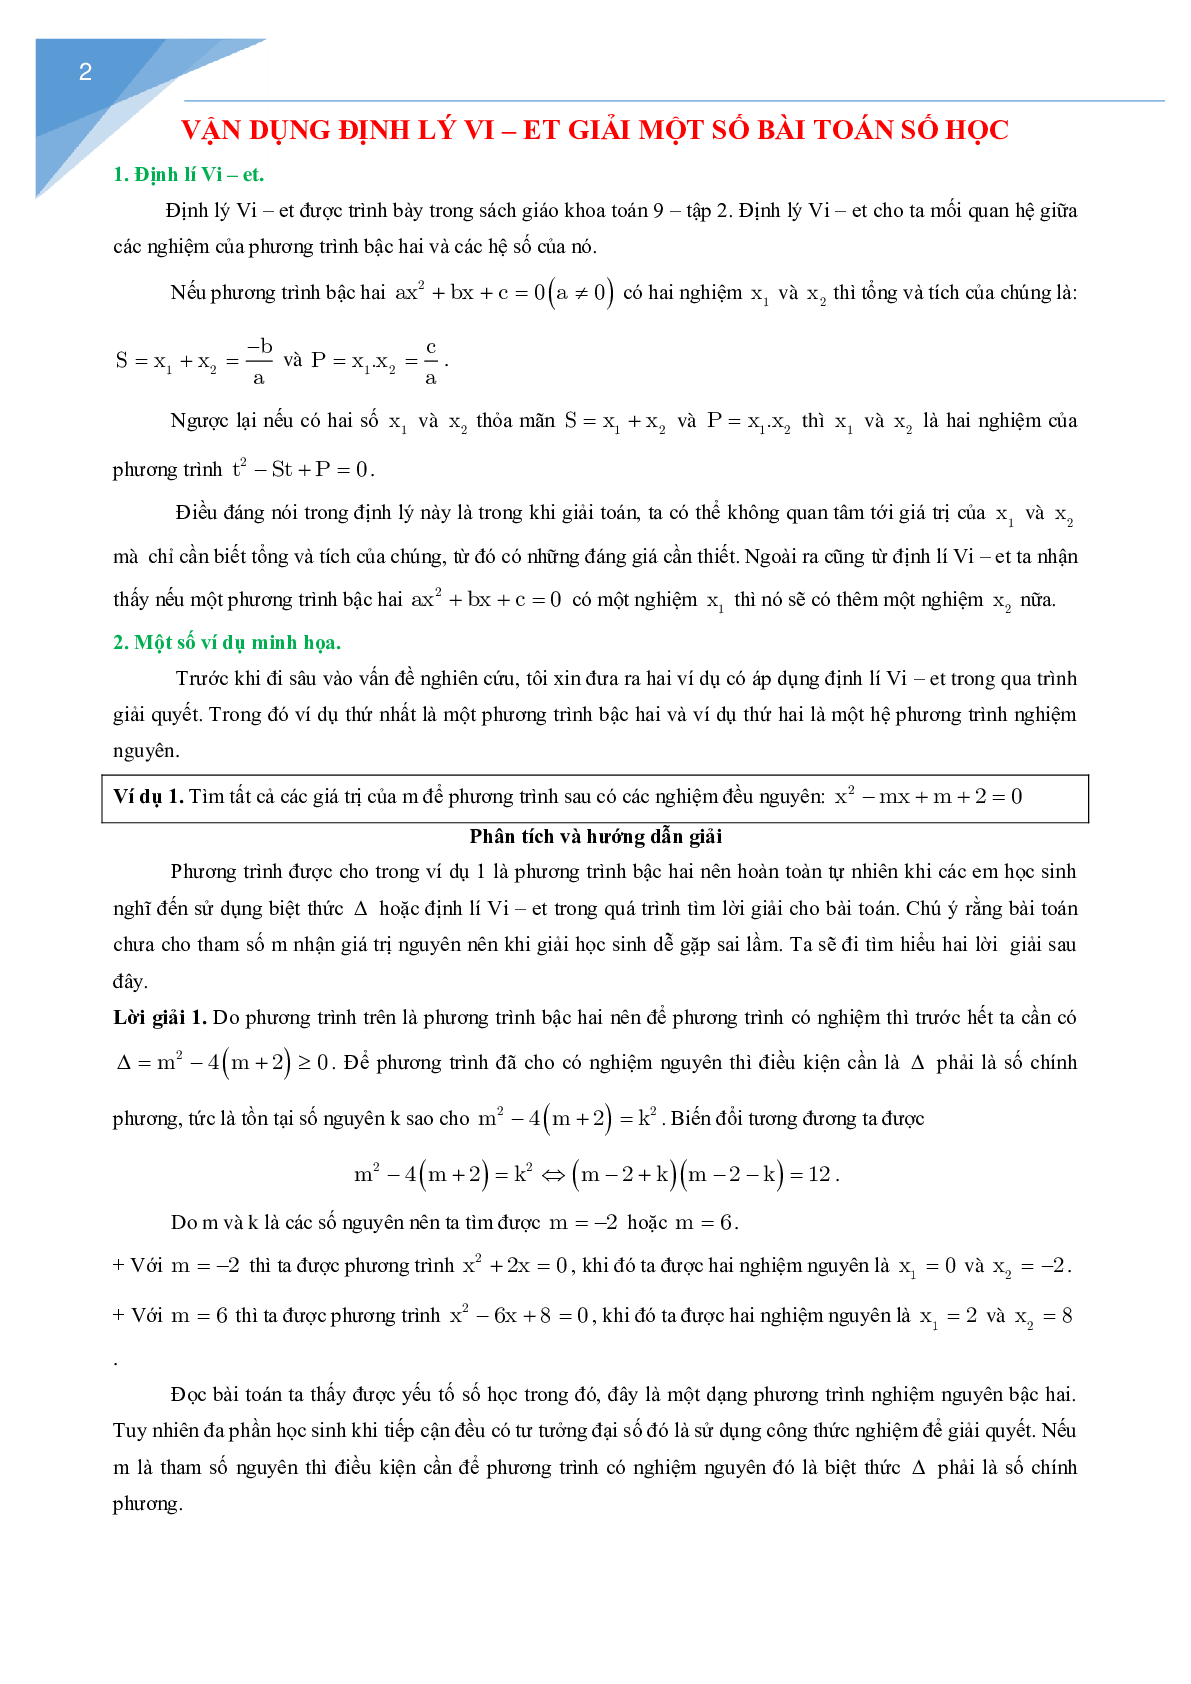 Vận dụng định lý Vi-et giải một số bài toán số học (trang 2)